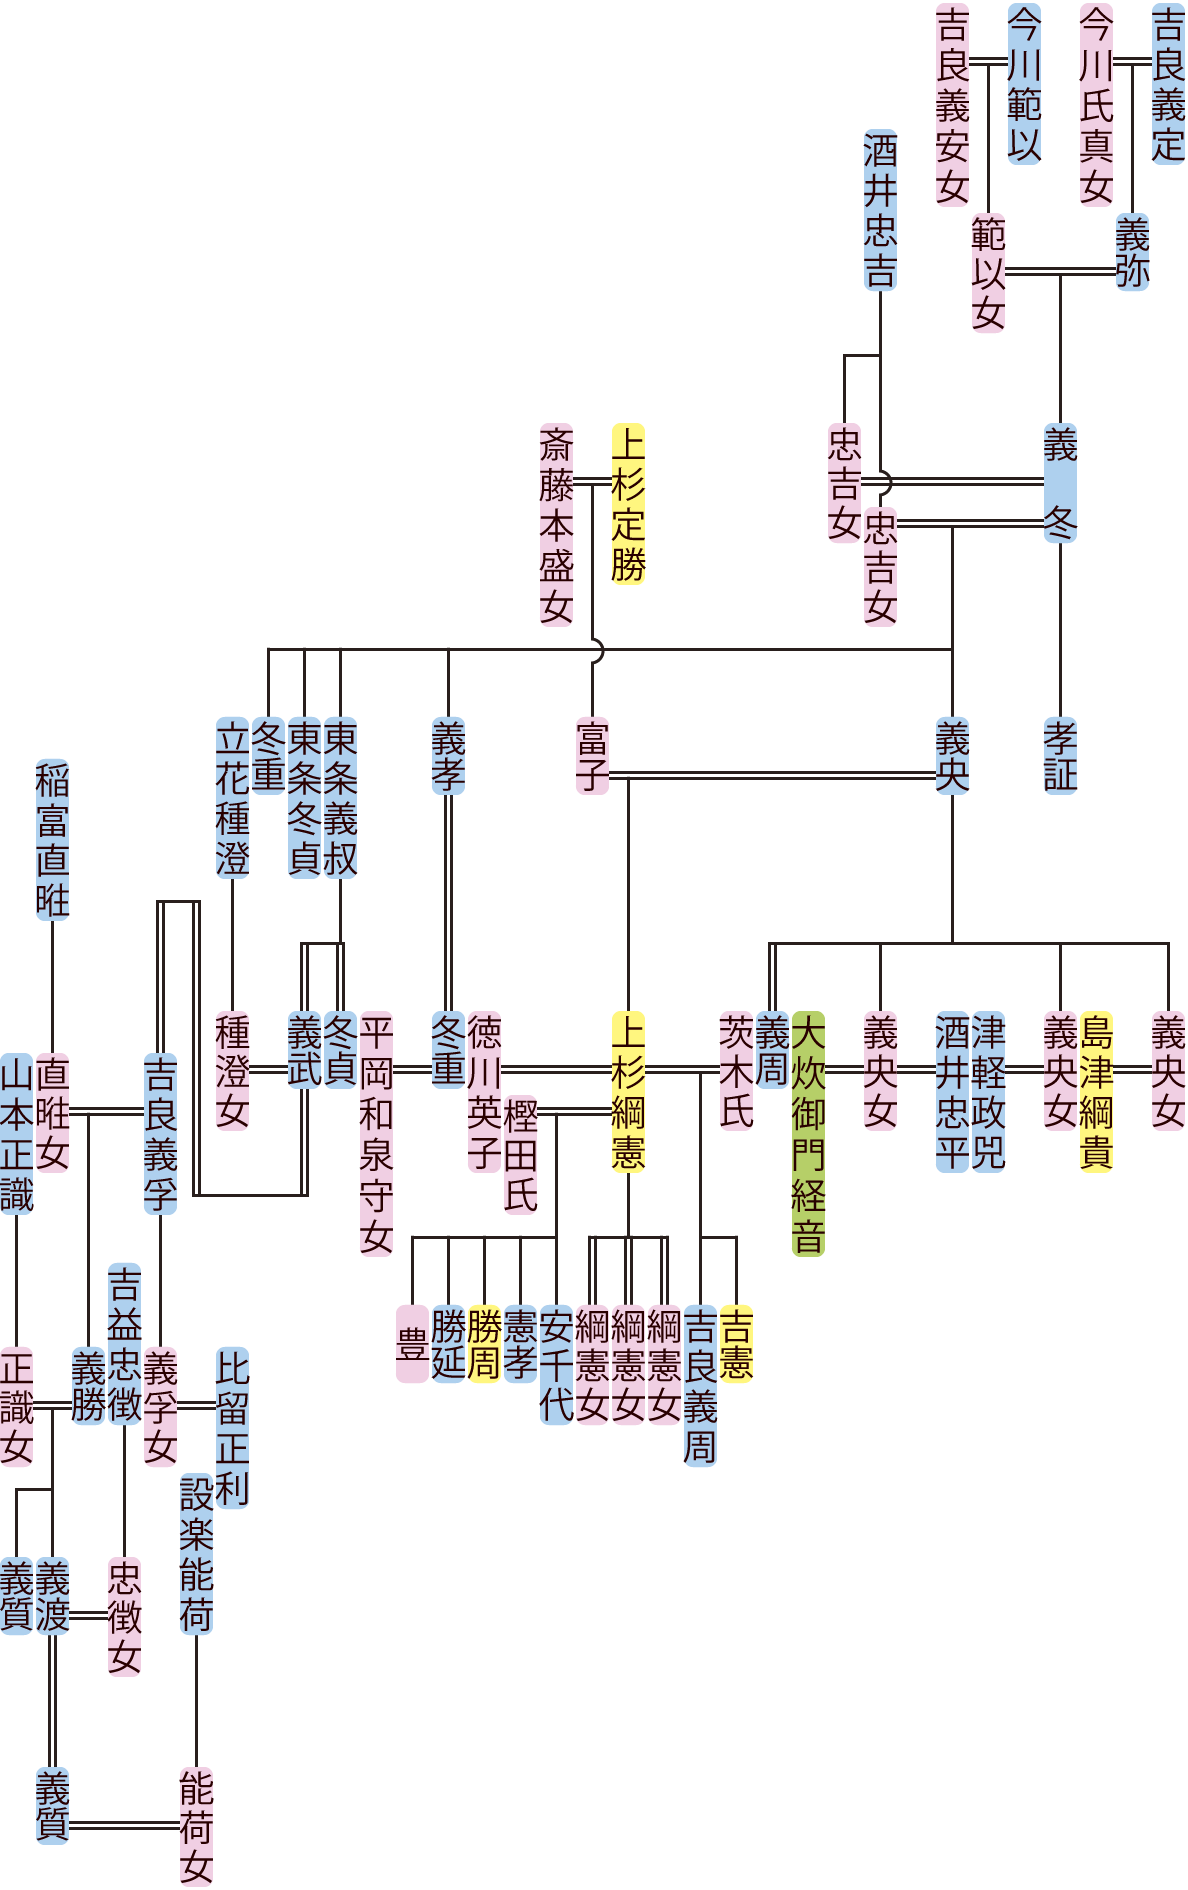 吉良義冬～義周・東条義叔～吉良義質の系図